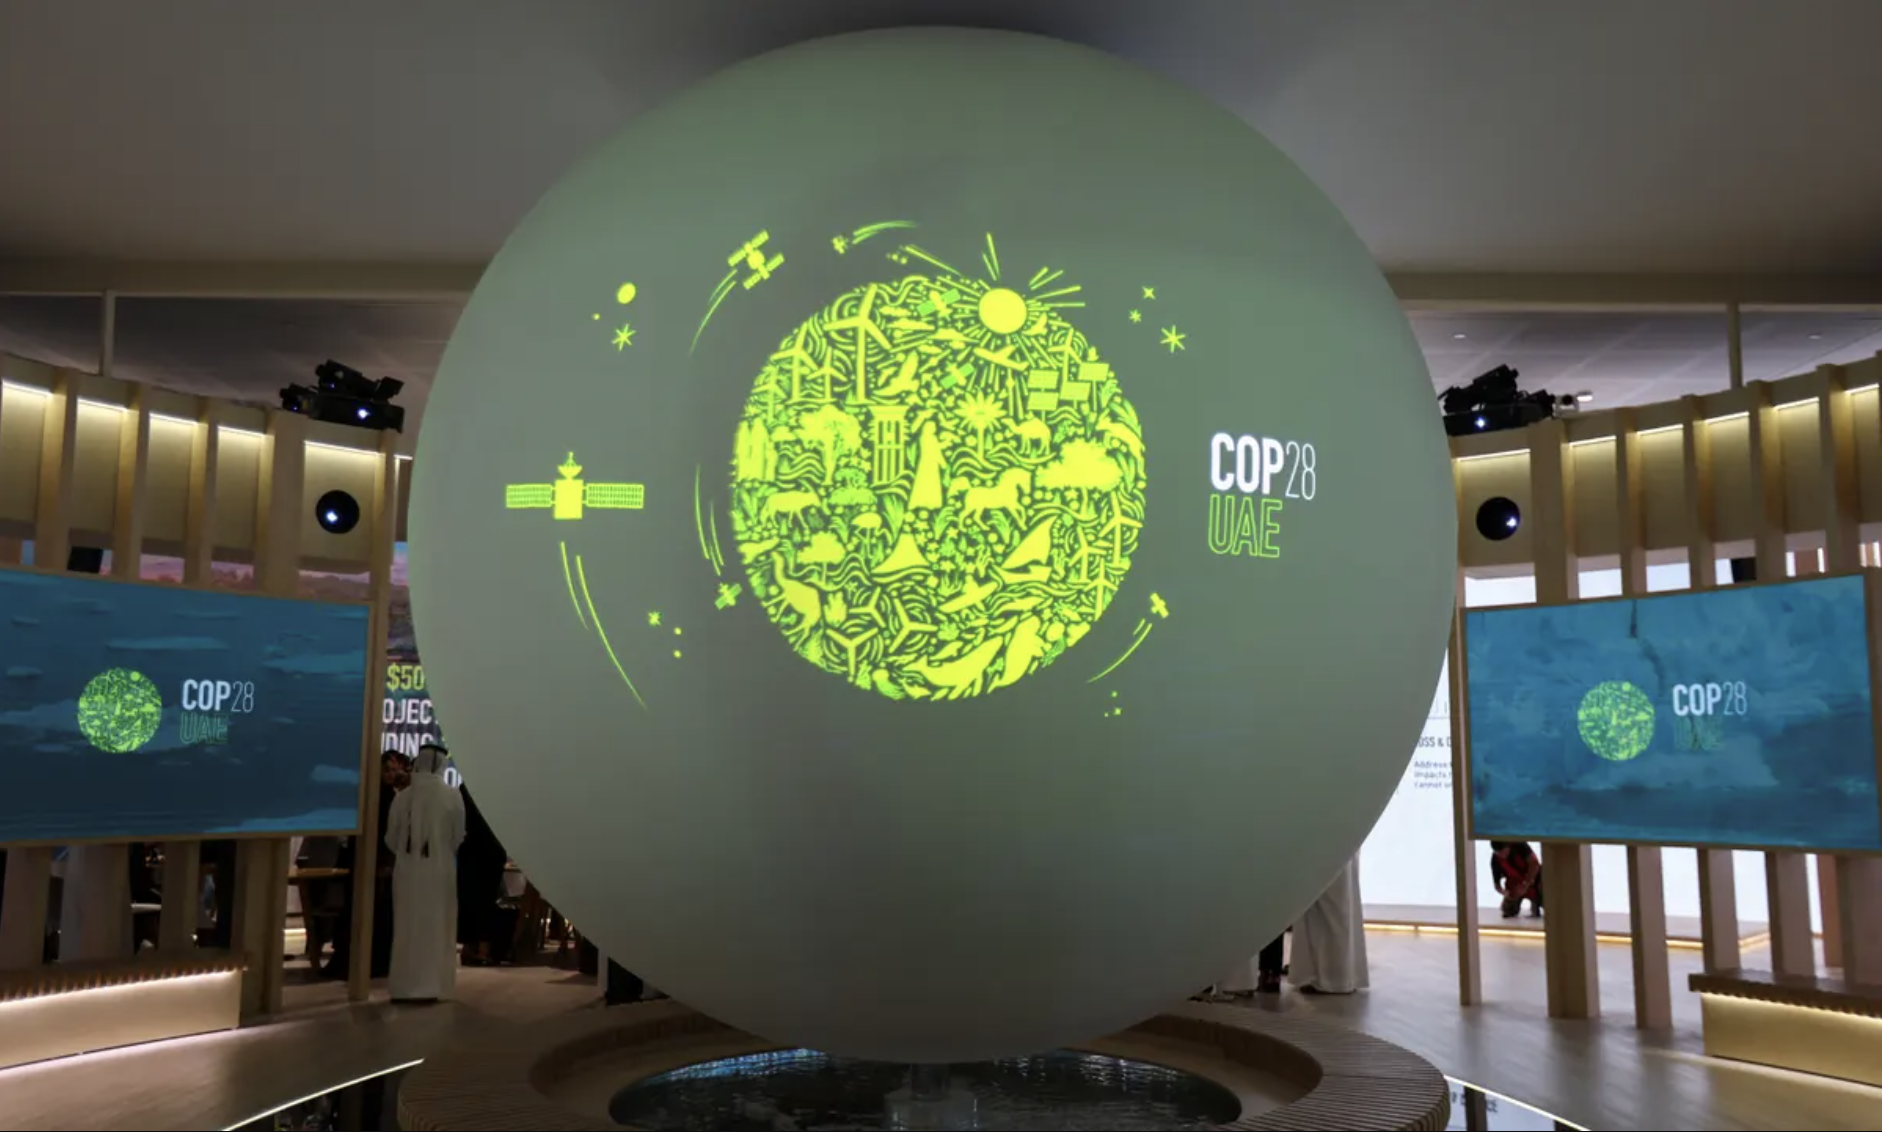 Display advertising COP28 in the UAE.